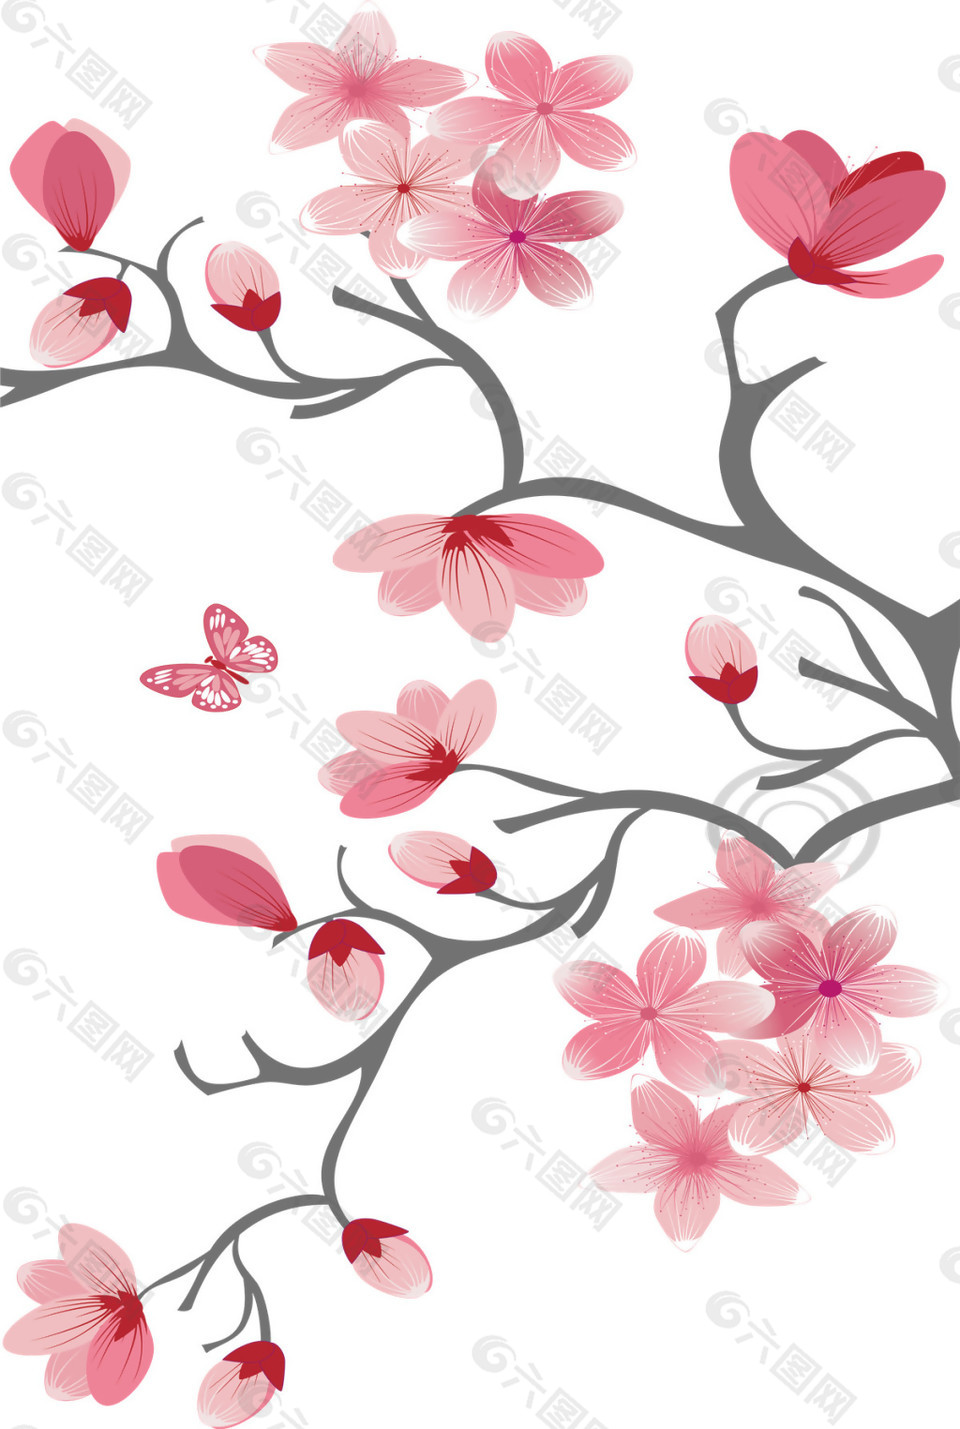 清新风格深粉色花瓣樱花装饰元素